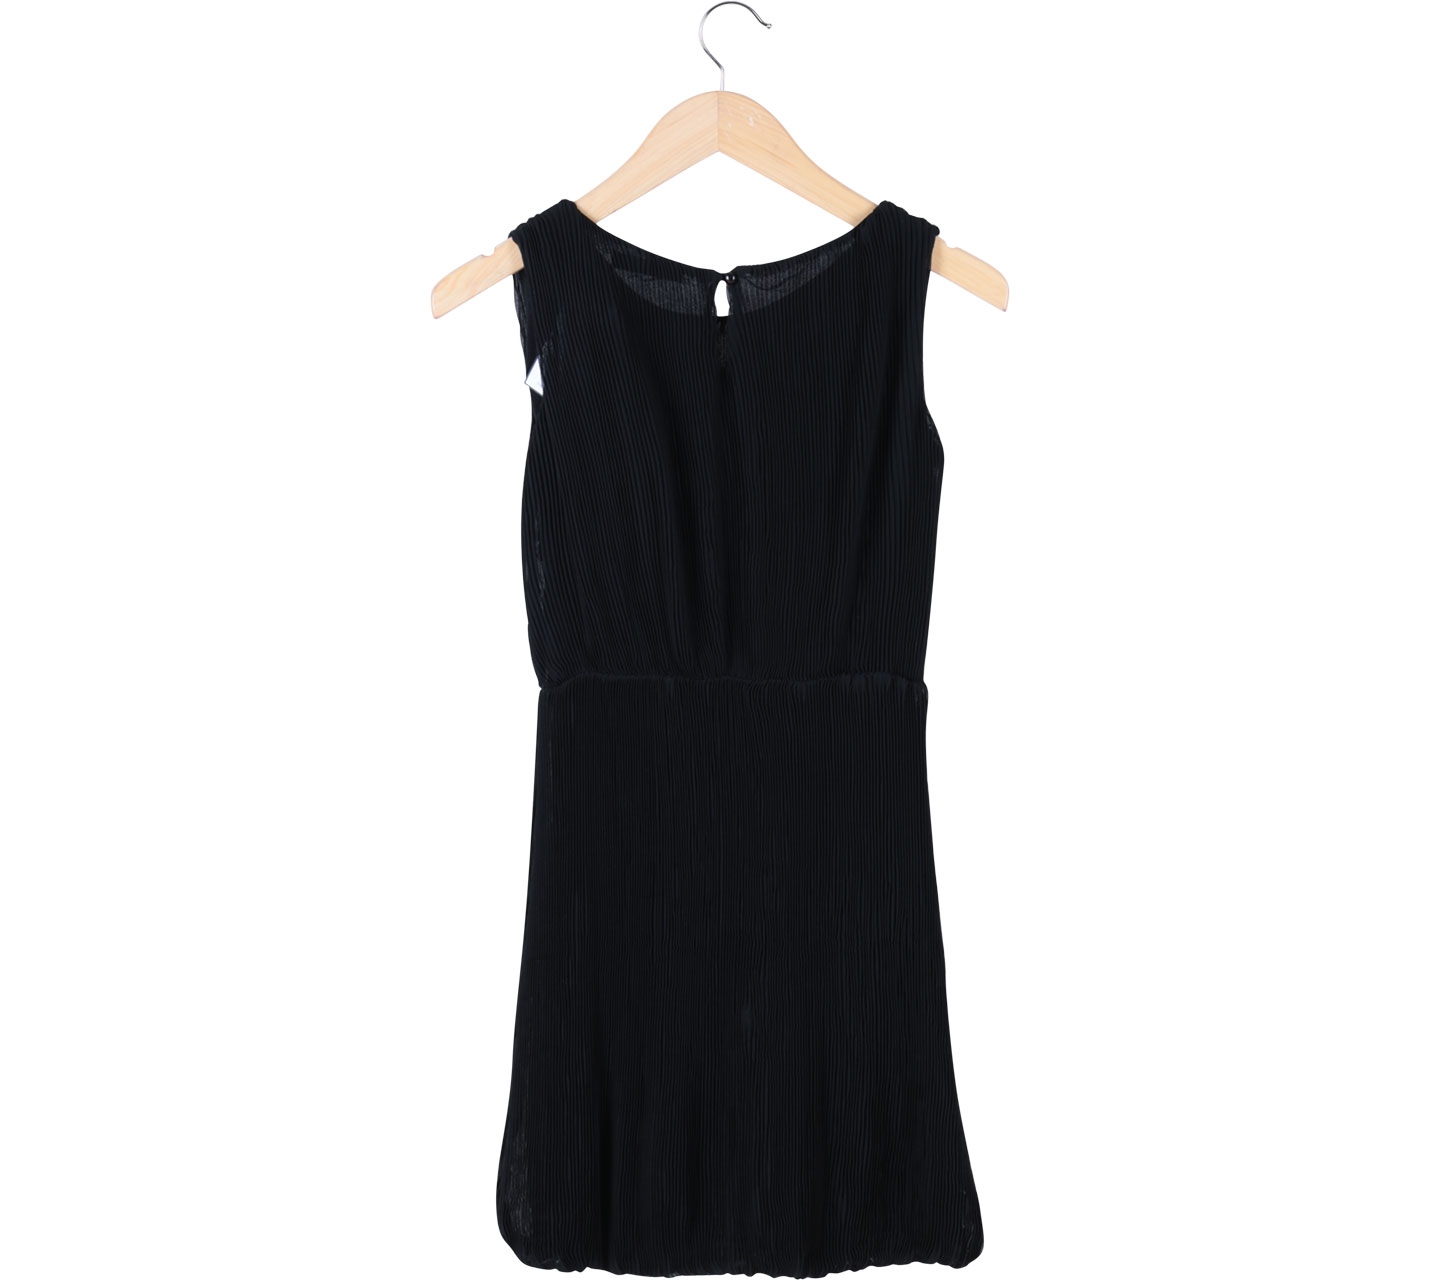 Chic Simple Black Pleated Sleeveless Mini Dress